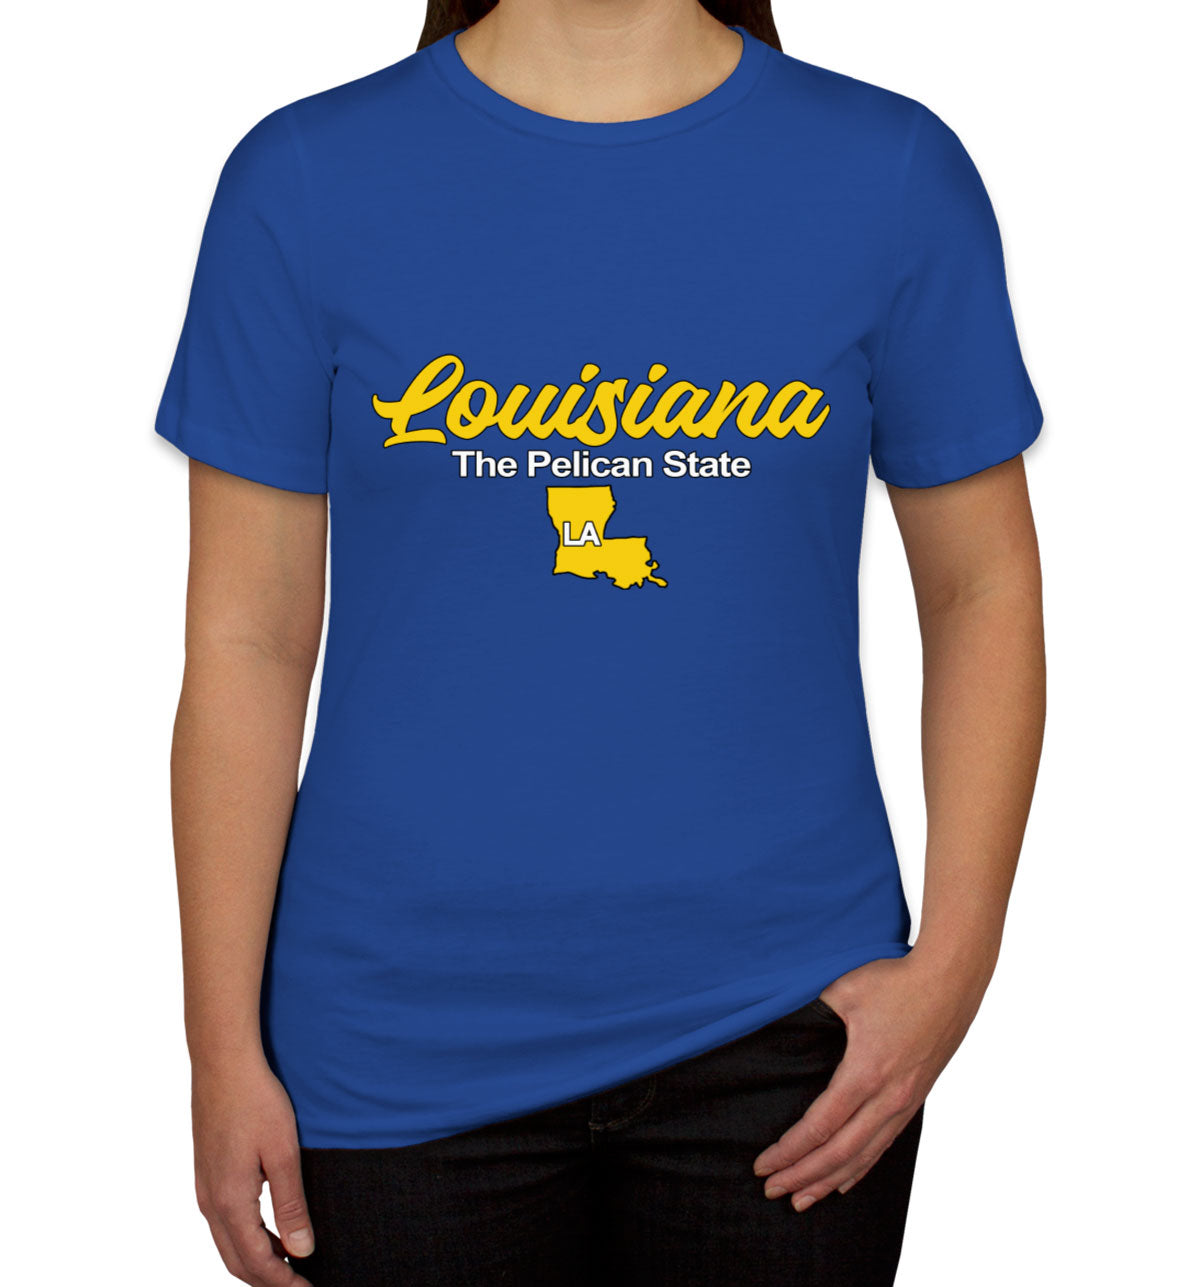 Louisiana The Pelican State Women's T-shirt